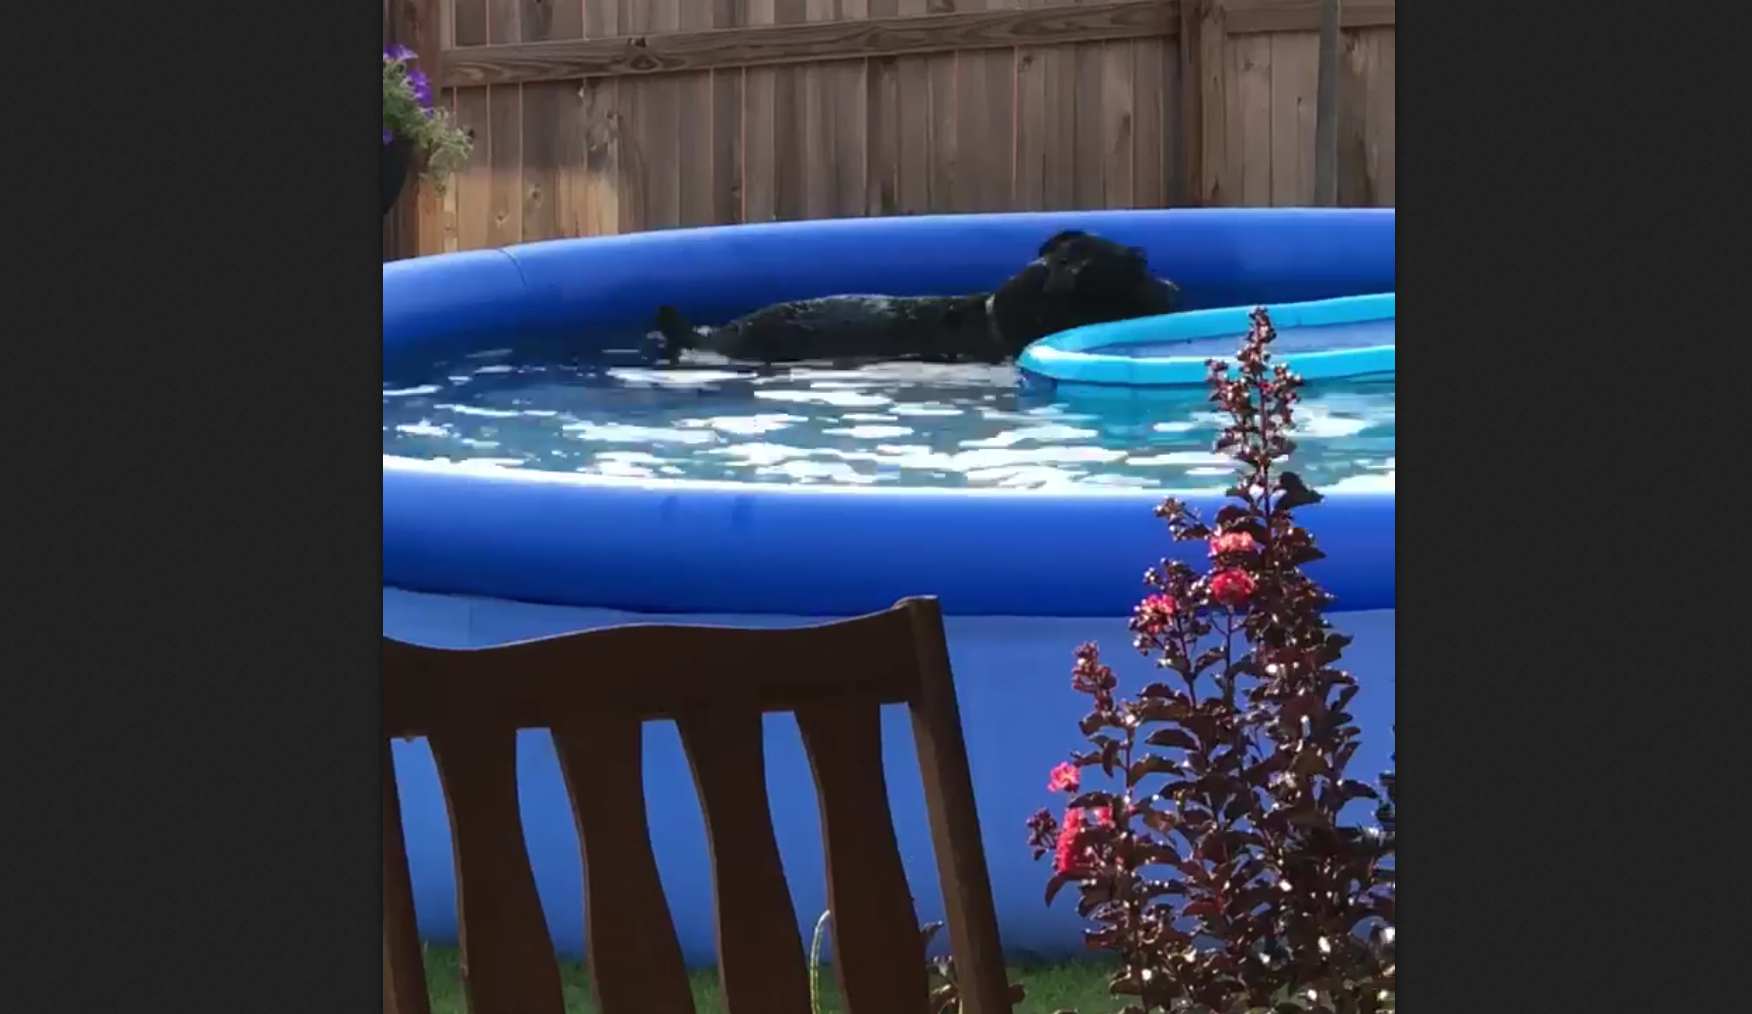 Il cane si tuffa in piscina: quello che accade dopo è incredibile [VIDEO]